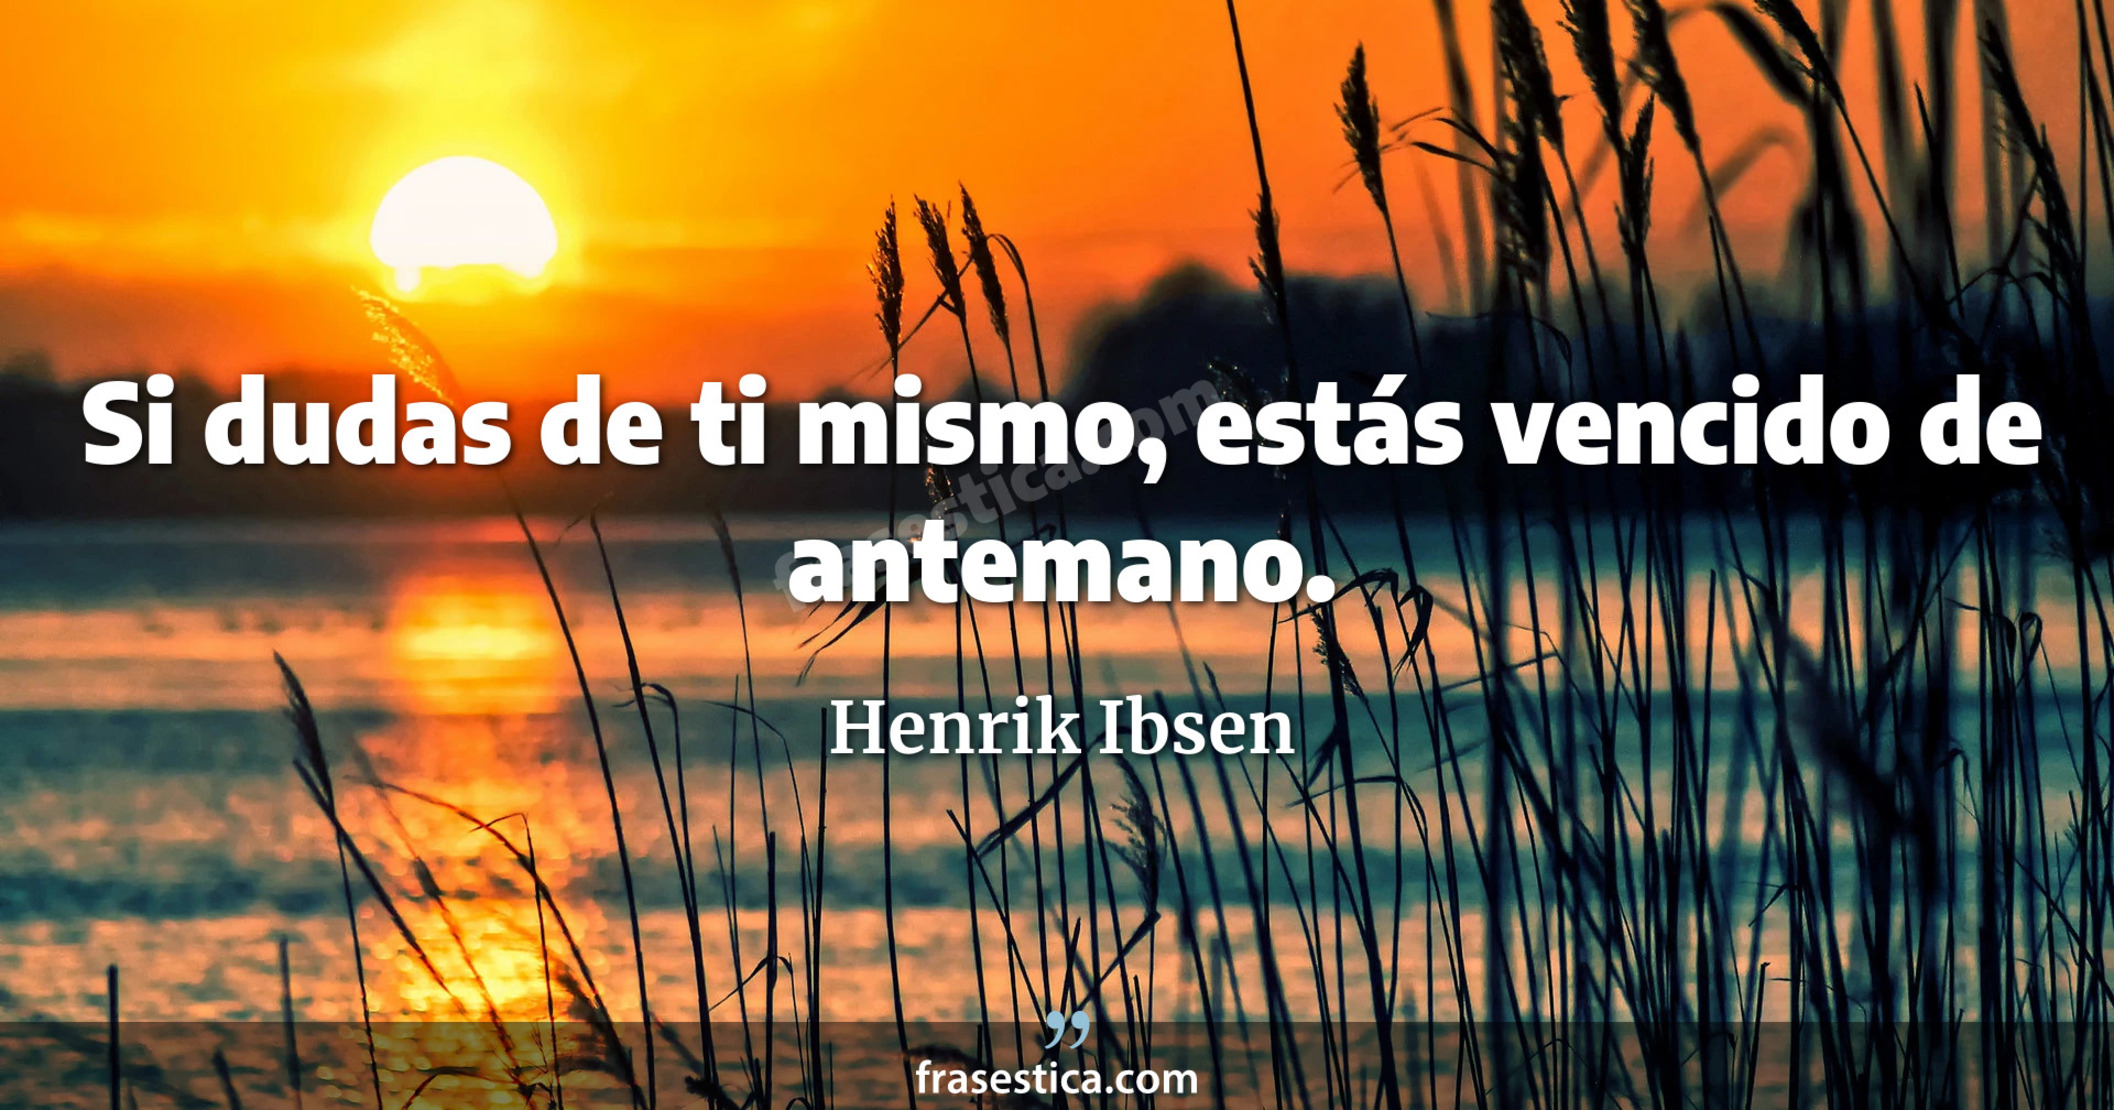 Si dudas de ti mismo, estás vencido de antemano. - Henrik Ibsen